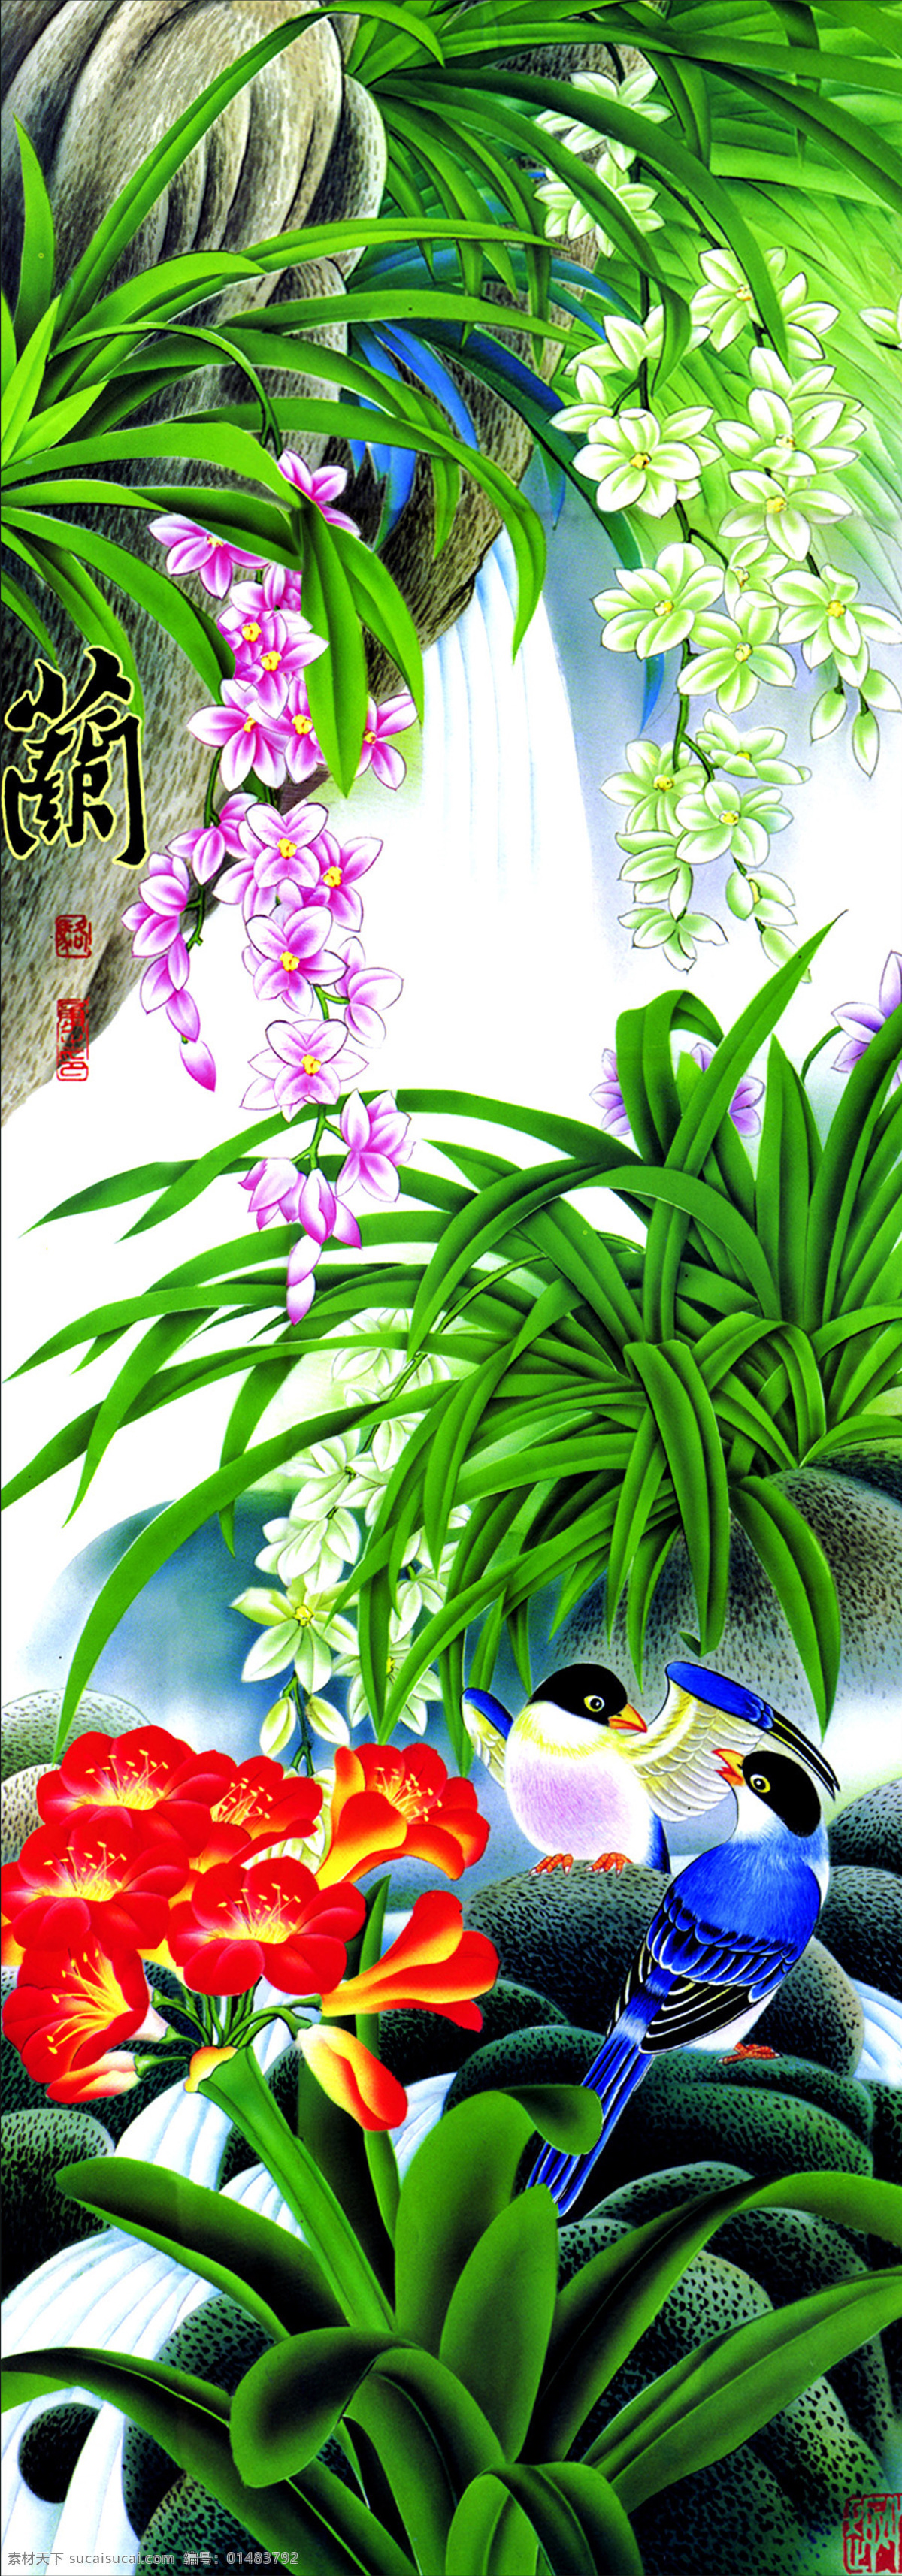 文化 艺术 花鸟画 中国风 植物 鲜花 鸟 伶俐 书画文字 文化艺术 白色